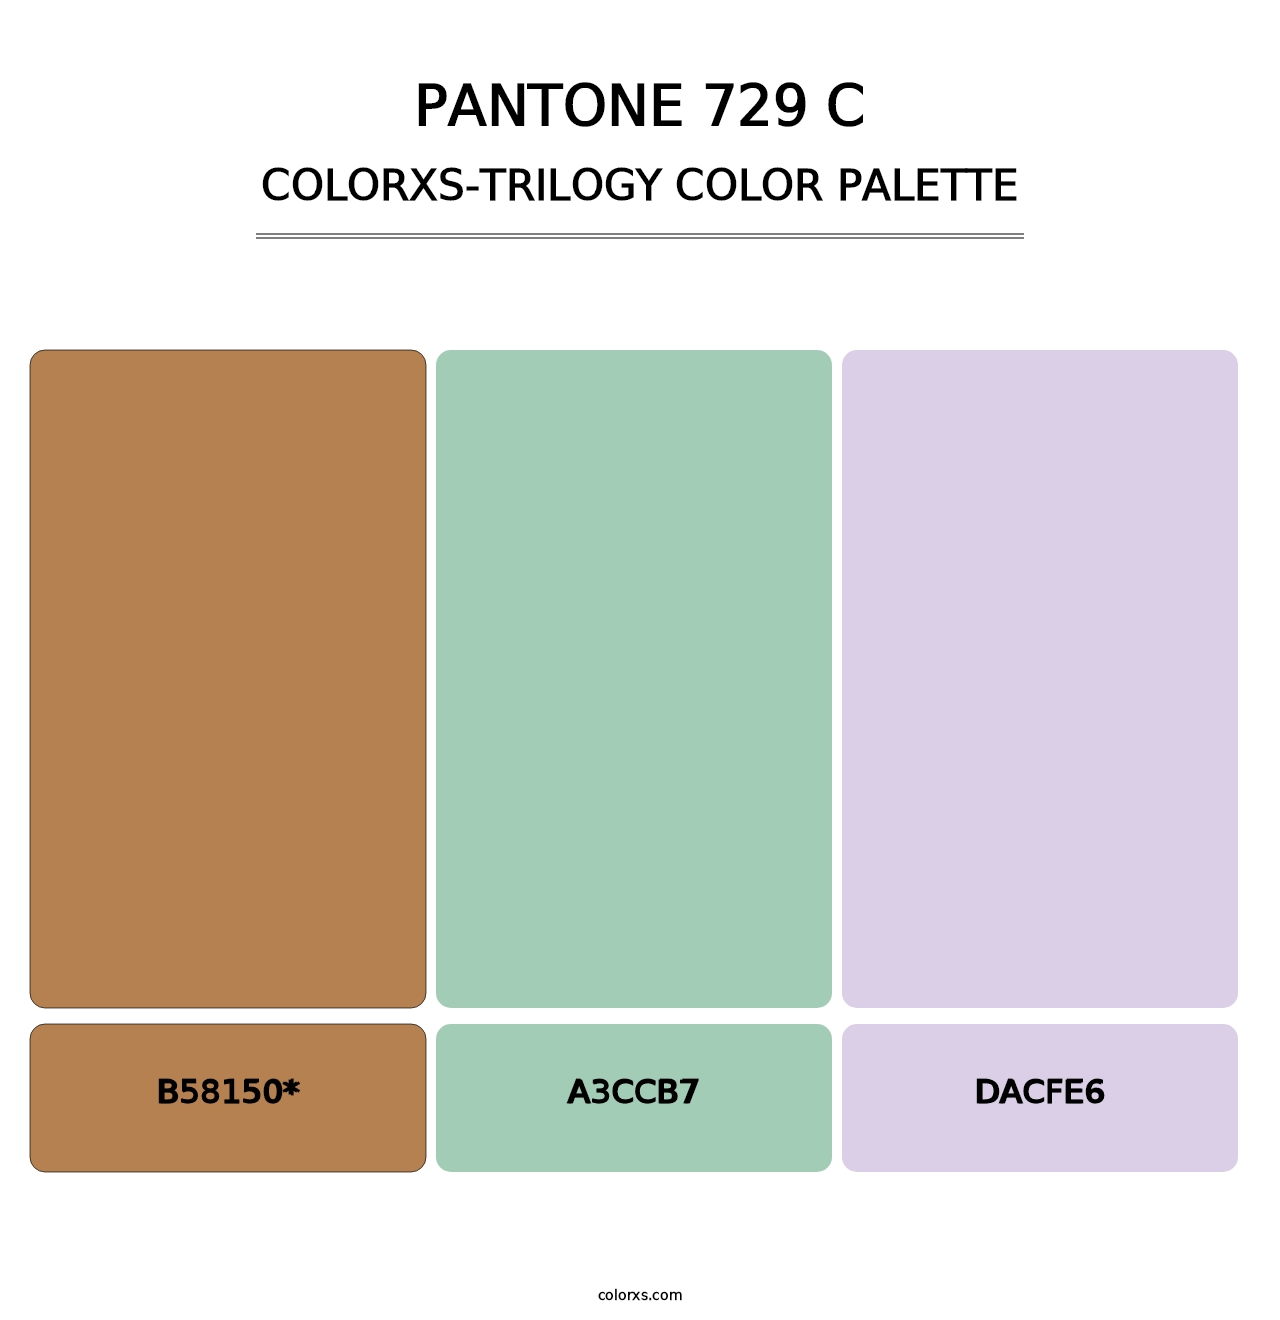 PANTONE 729 C - Colorxs Trilogy Palette